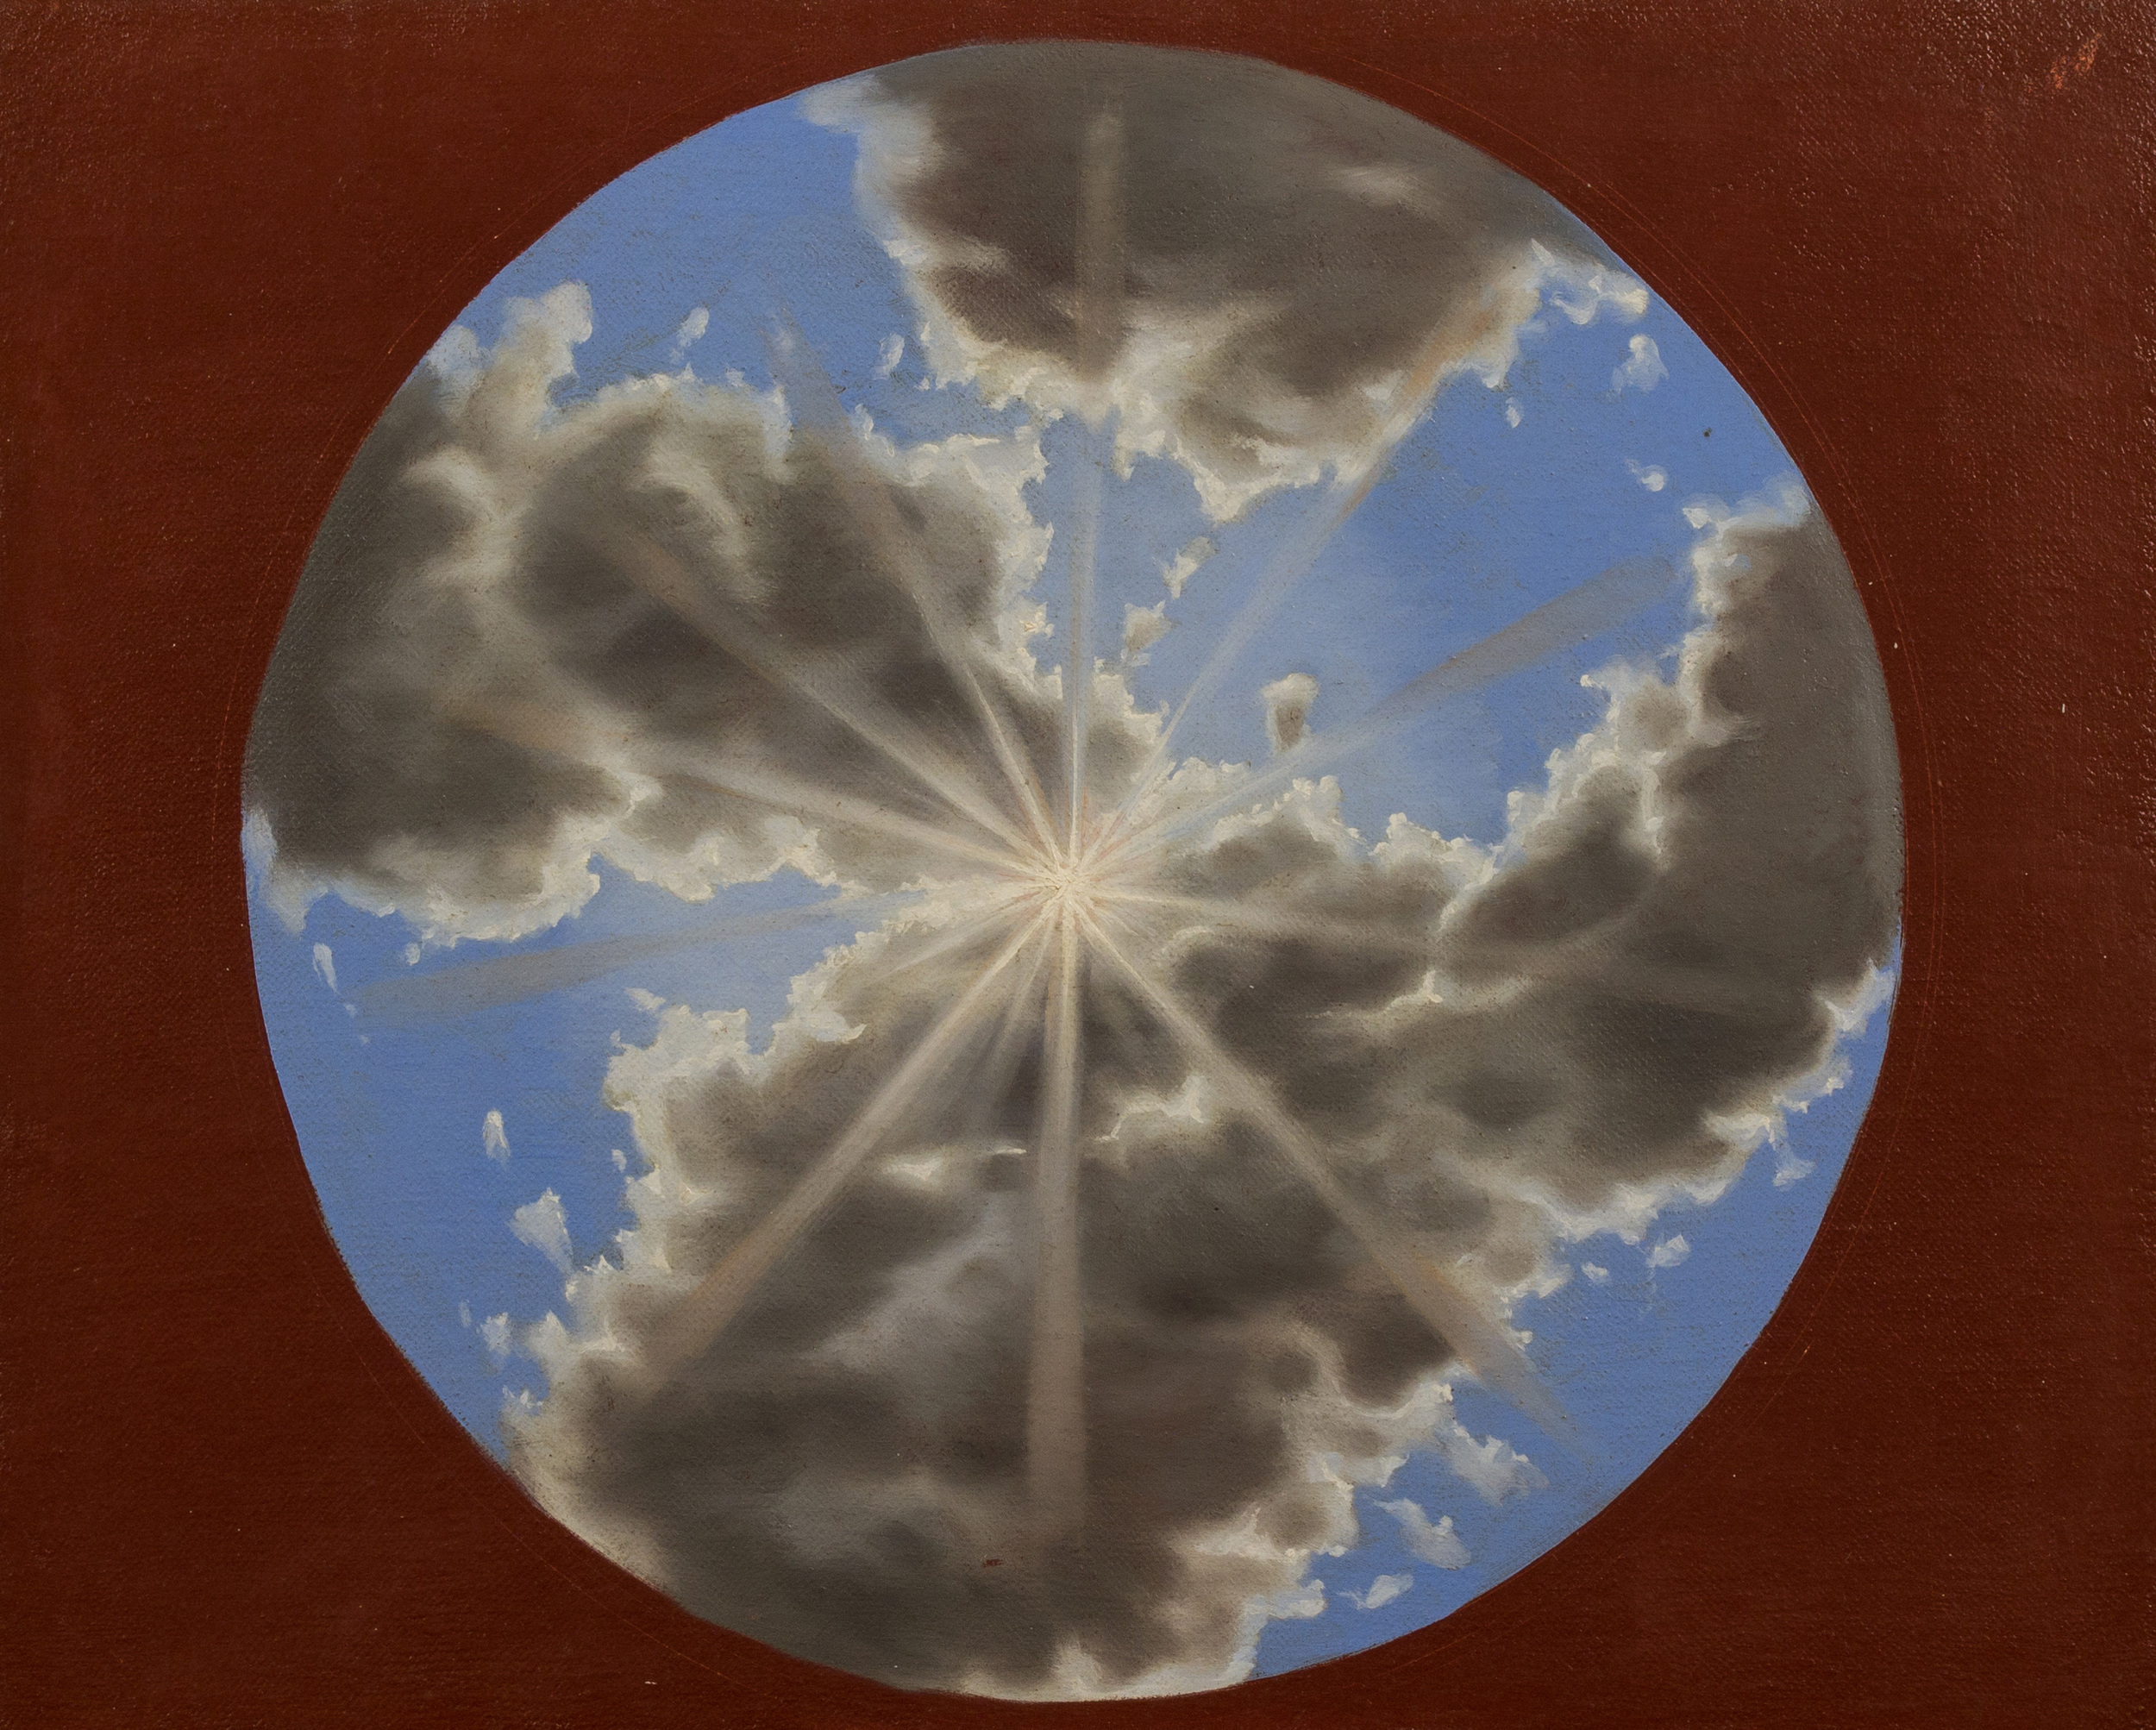   Studio di cielo per la cupola della Cattedrale di Bojano , olio su tela, 2001 